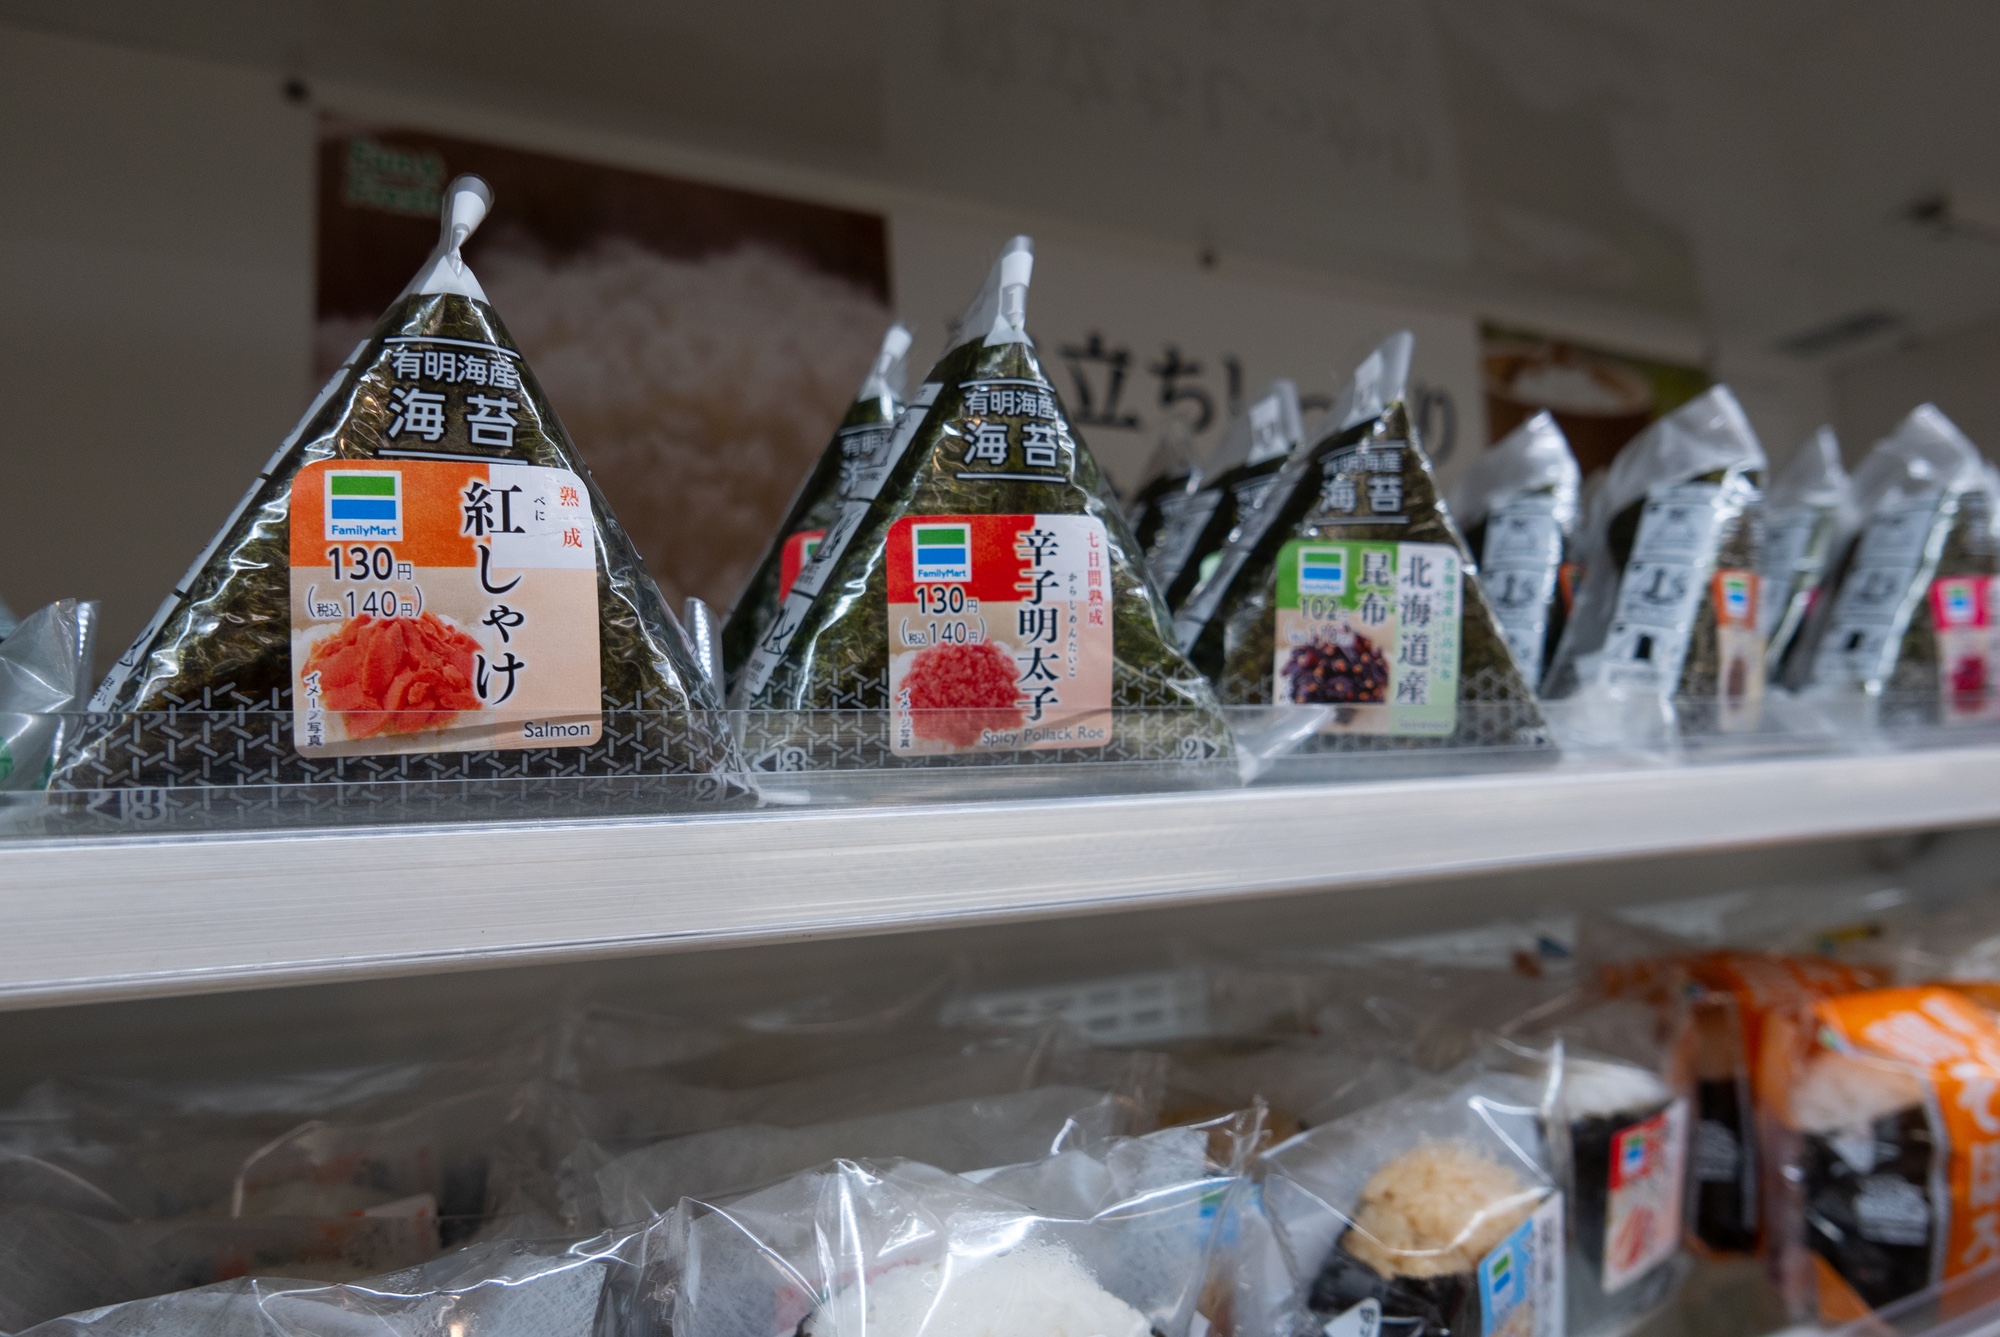 Ein typisches Onigiri der Minimarkt-Kette Family Mart.